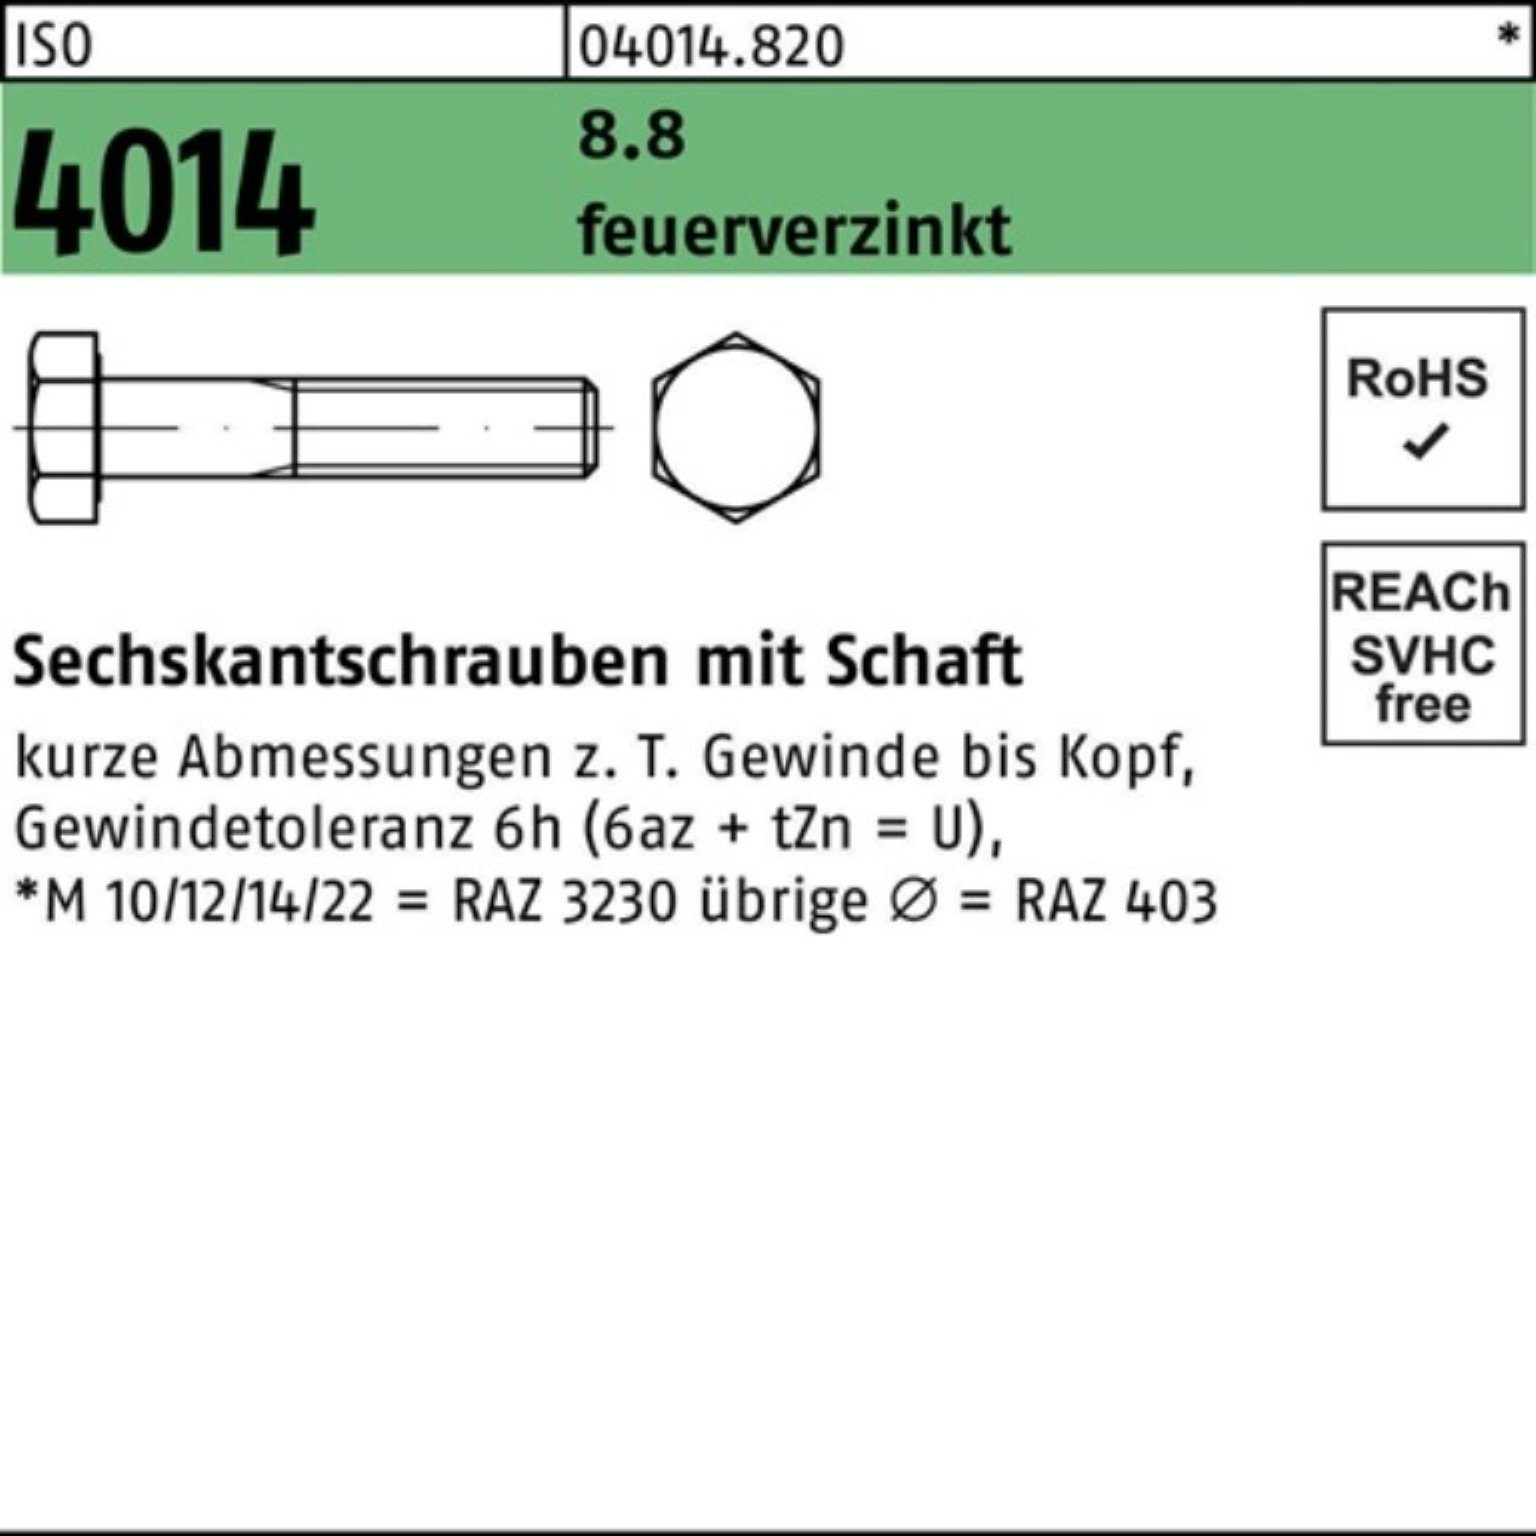 Bufab Sechskantschraube 100er Pack Sechskantschraube ISO 4014 Schaft M16x 60 8.8 feuerverz. 50